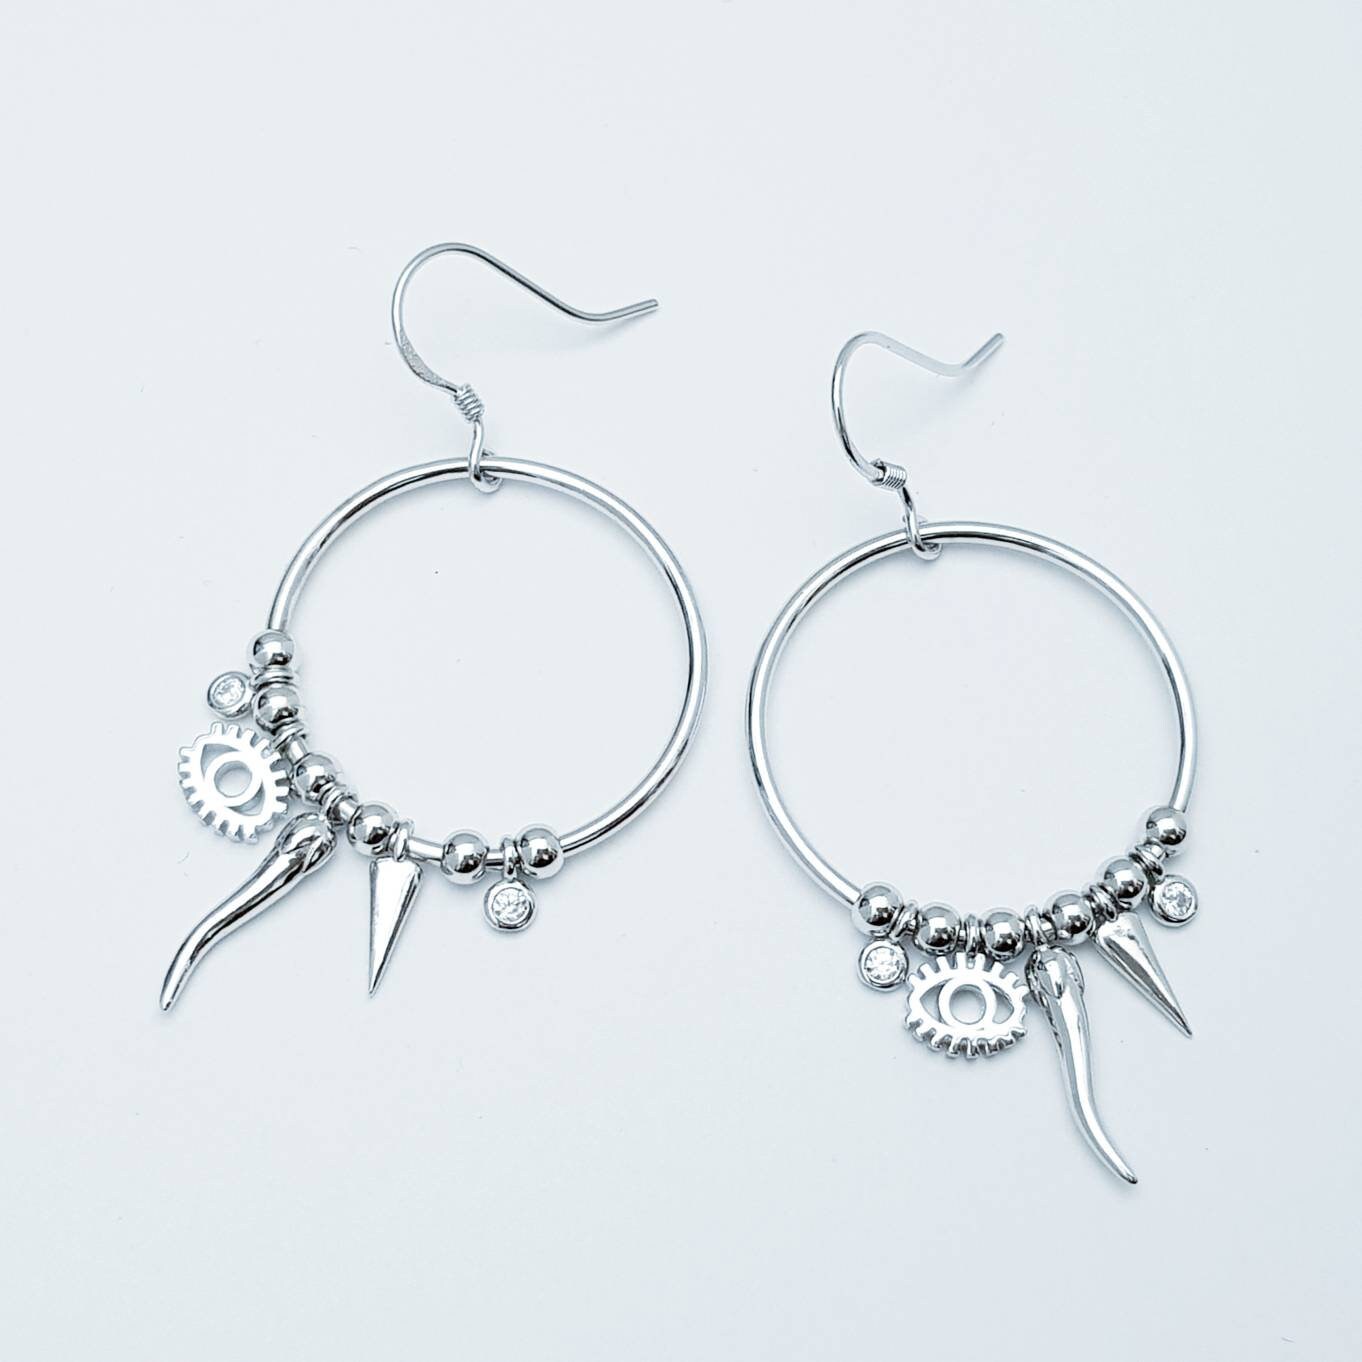 French wire hook earrings, large round unique drop earrings, evil eye boho earrings, festival earrings